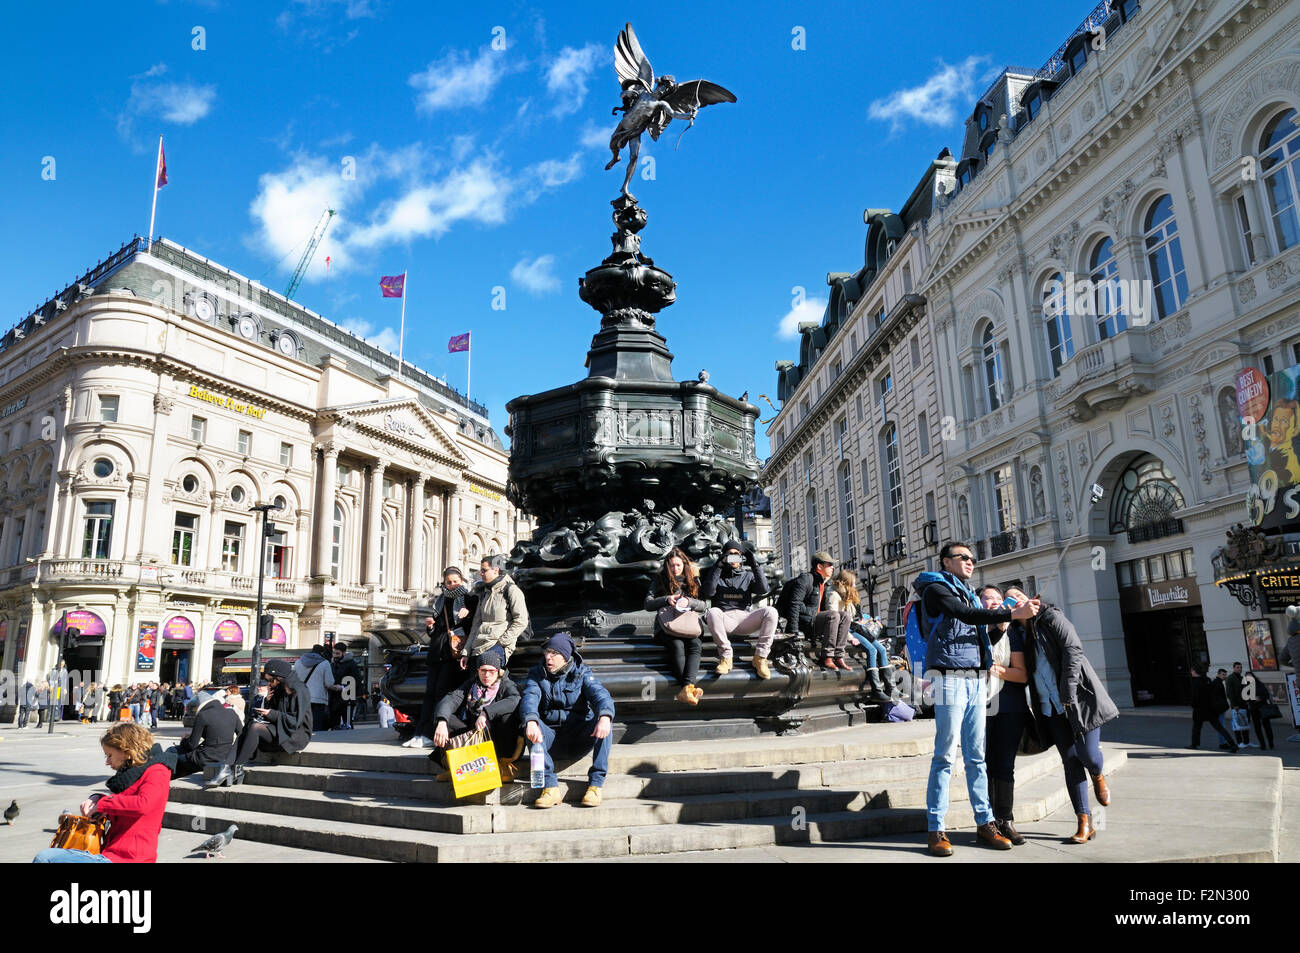 Touristes aux marches de la fontaine du Mémorial de Shaftesbury, ou Eros, sous la statue d'Anteros, Piccadilly Circus, Cité de Westminster, Londres, Angleterre,ROYAUME-UNI Banque D'Images